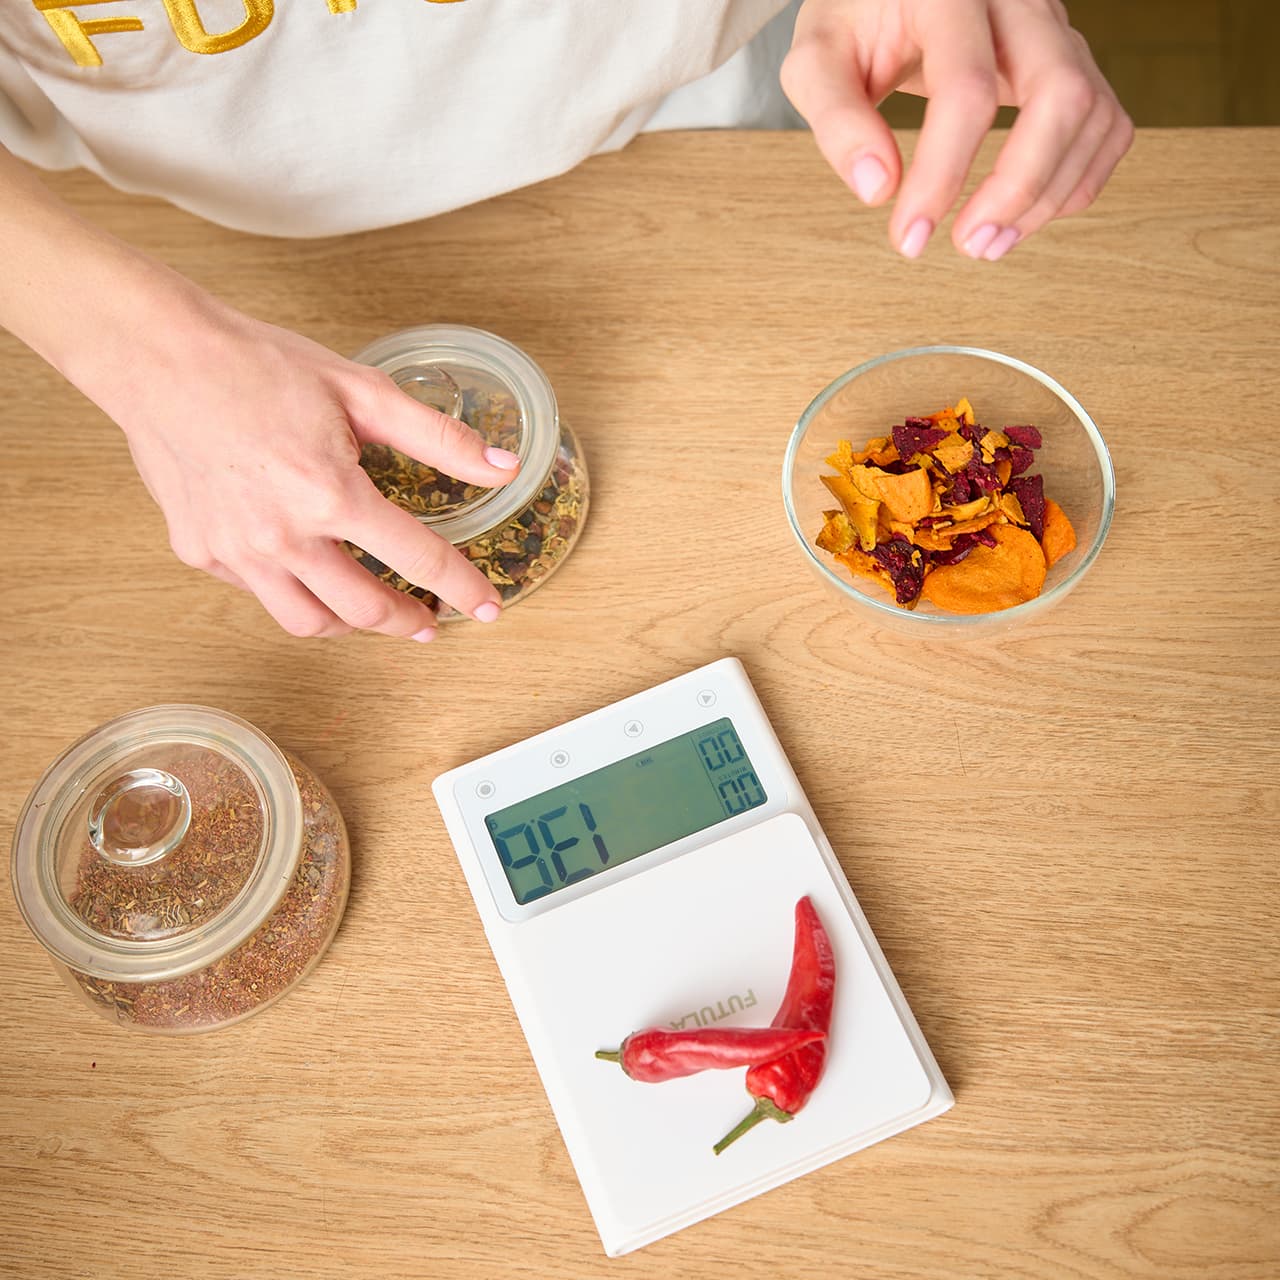 Futula Kitchen Scale 3 способны измерять вес до 5 килограммов с точностью до 1 грамма